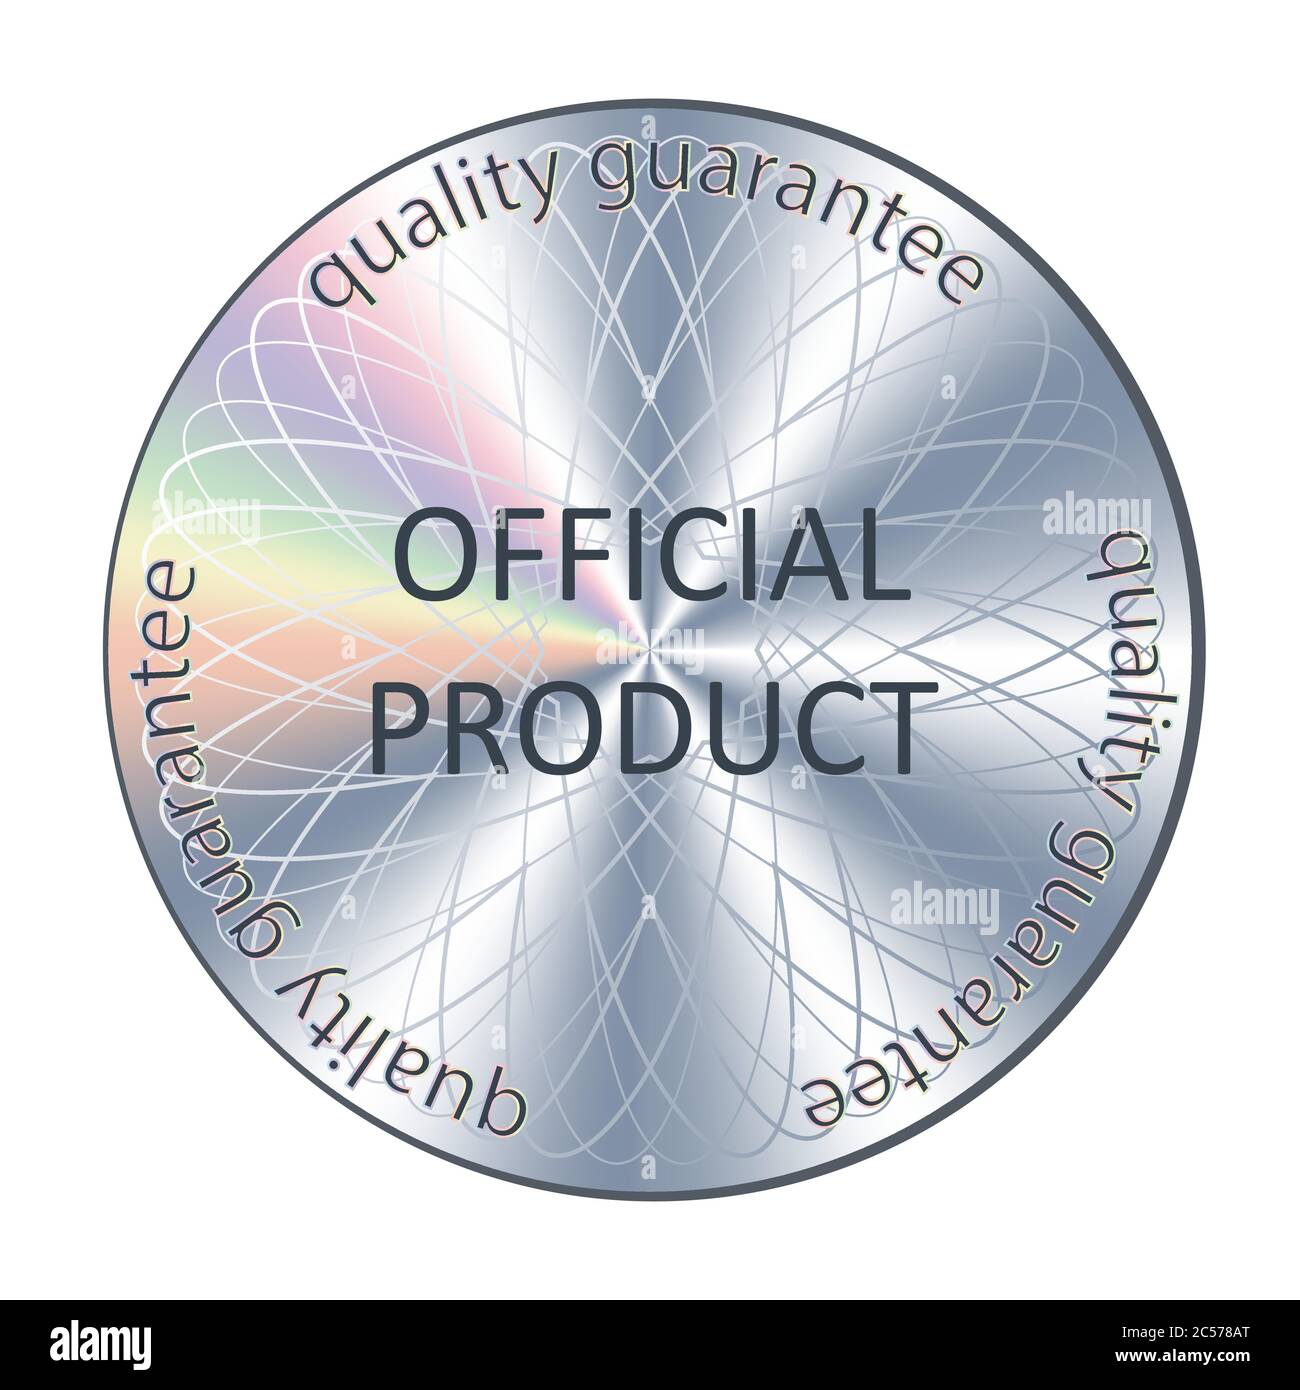 https://c8.alamy.com/compde/2c578at/offizielle-produkt-rund-hologramm-realistische-aufkleber-vektor-symbol-abzeichen-aufkleber-fur-produktqualitat-garantie-und-label-design-2c578at.jpg